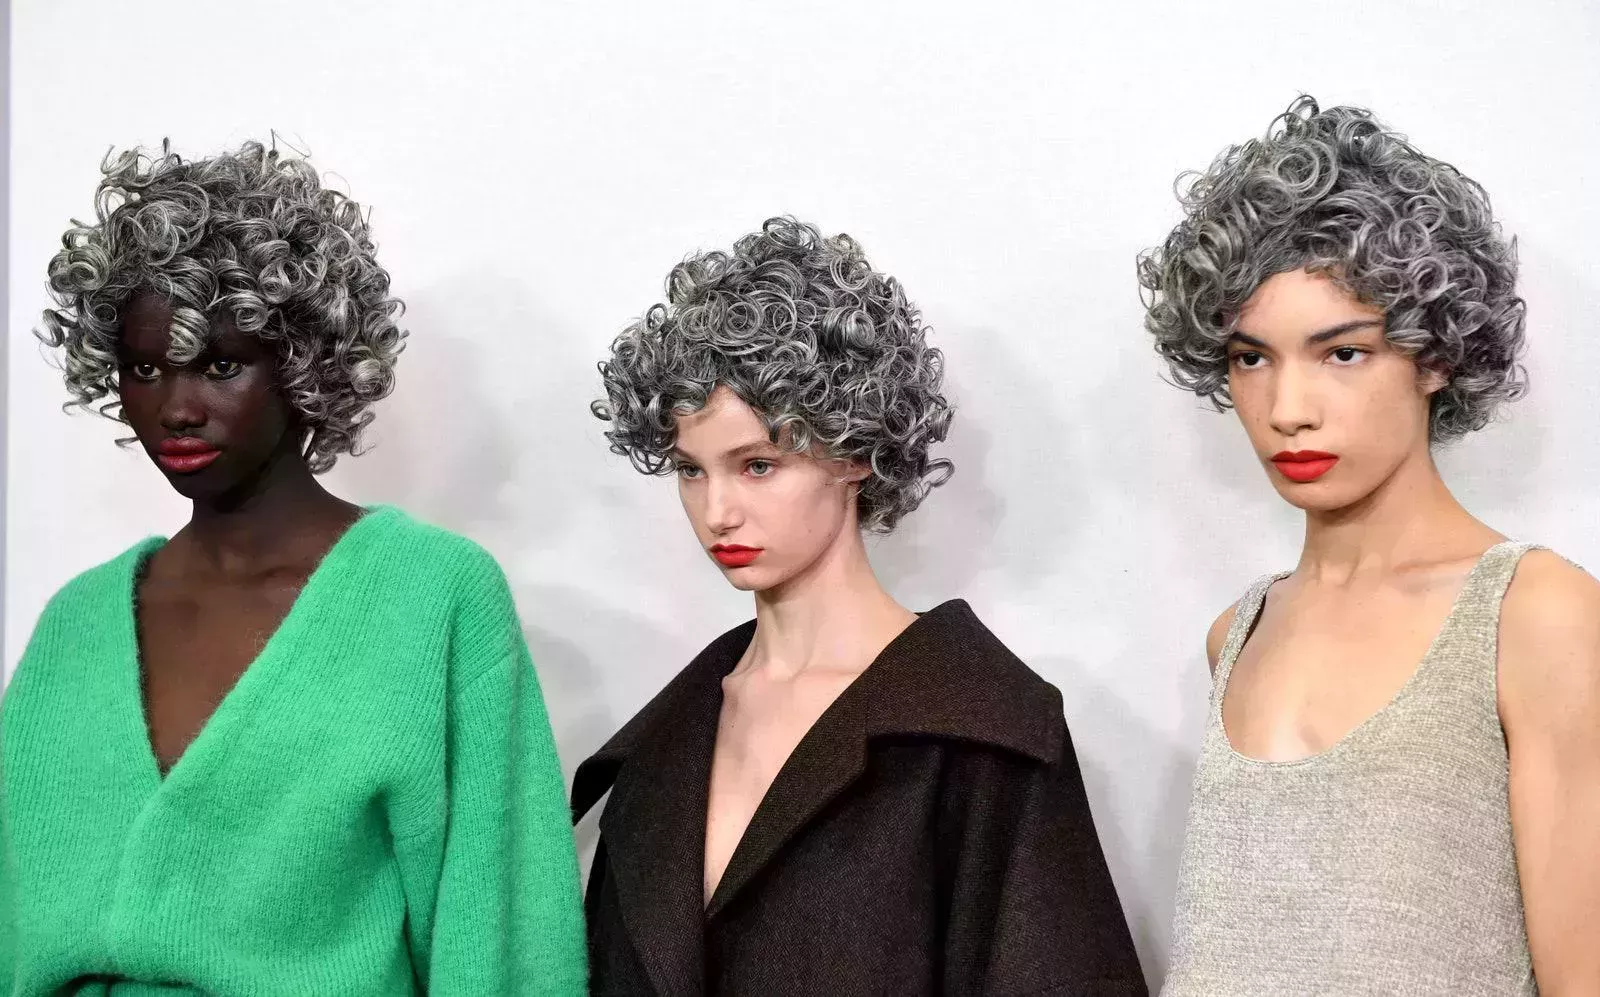 Las modelos canosas de JW Anderson arrasaron en la Semana de la Moda de Londres